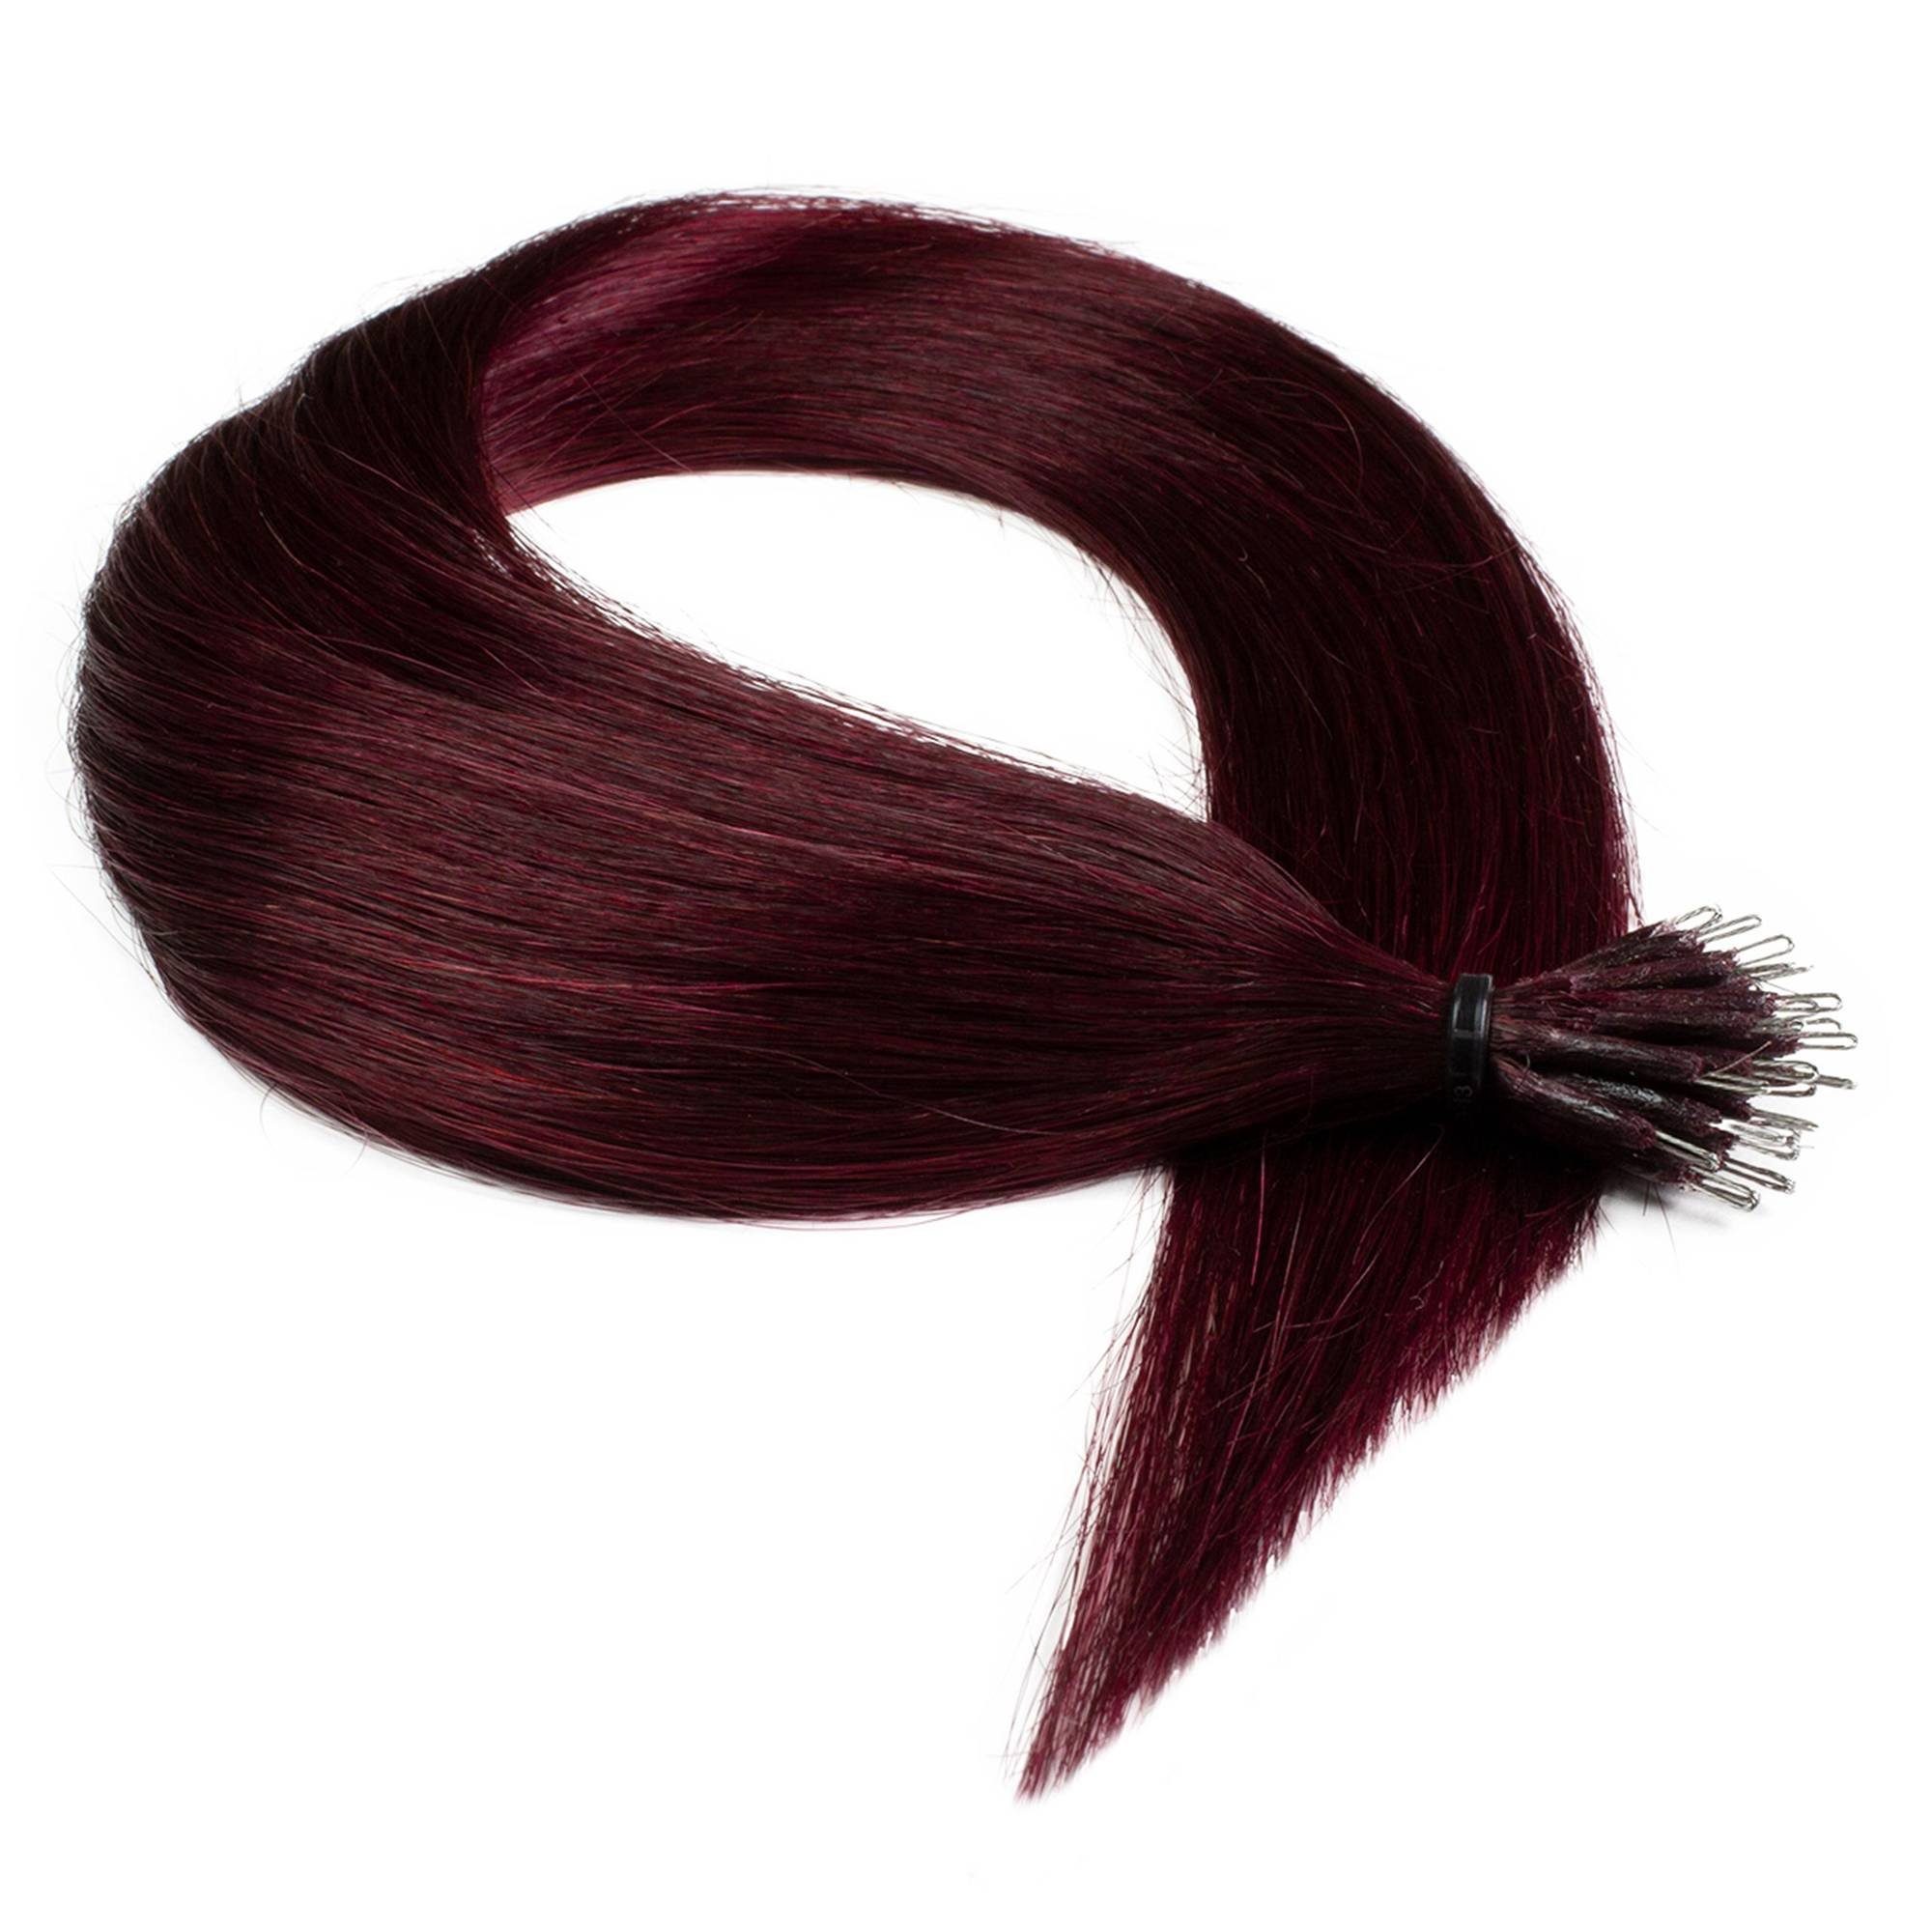 Premium Hellbraun Extensions #55/66 hair2heart Echthaar-Extension Nanoring 60cm Violett